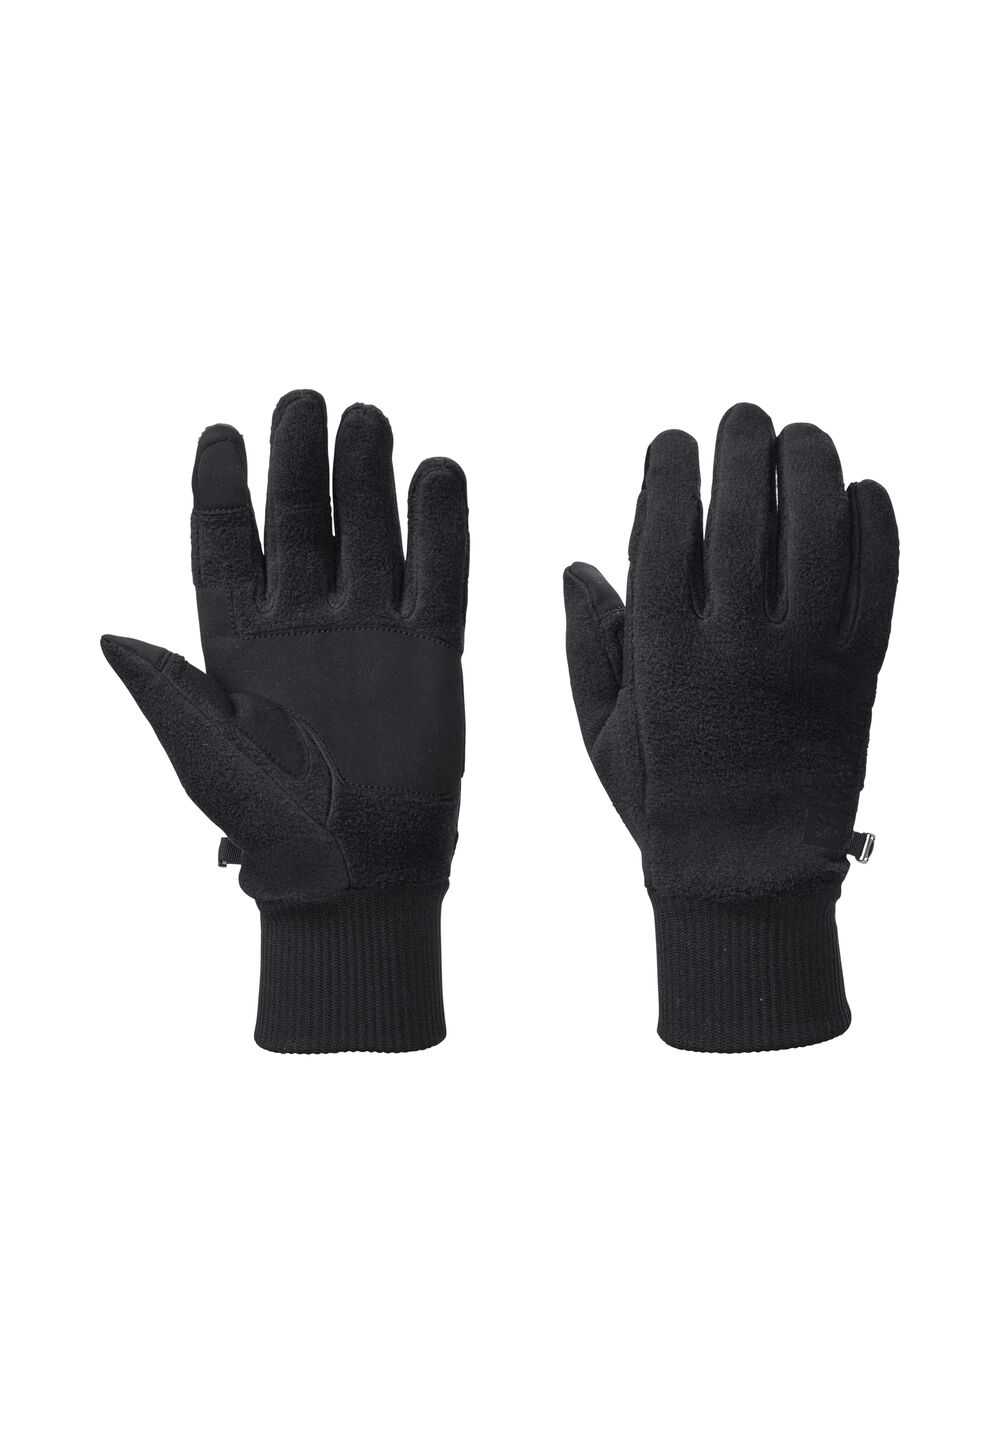 Jack Wolfskin Vertigo Glove Fleece handschoenen XS zwart black